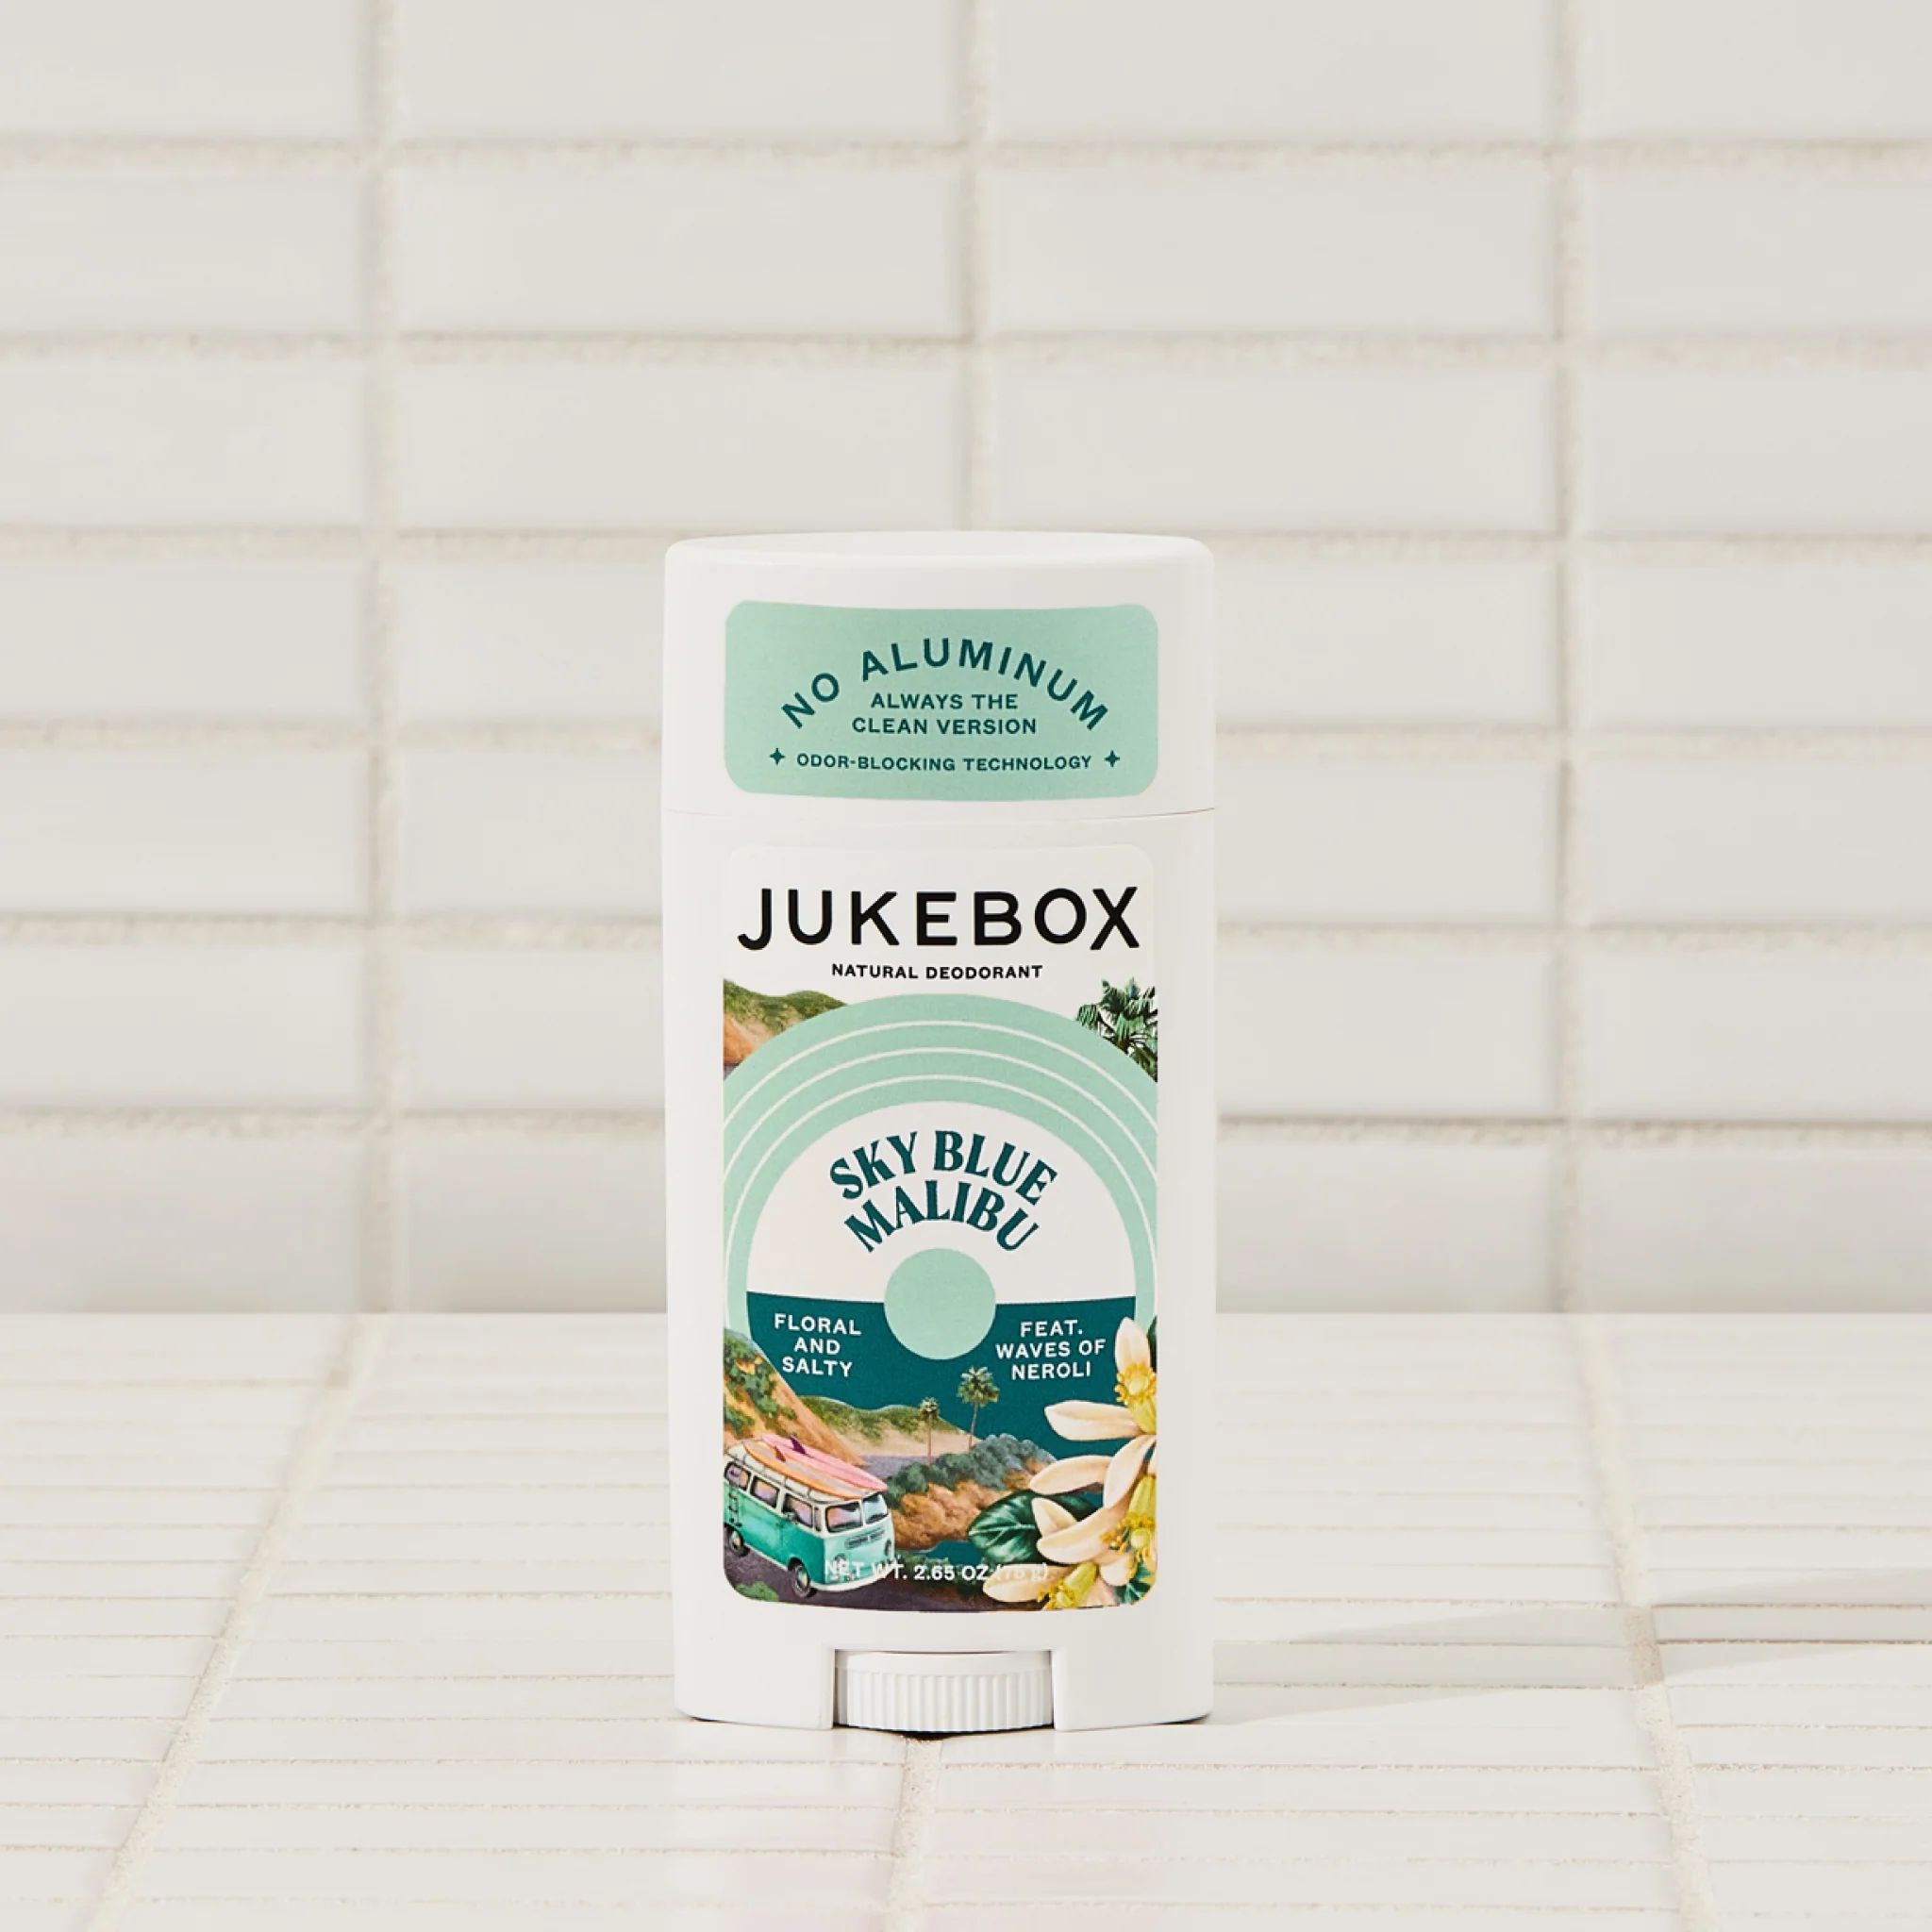 Sky Blue Malibu Deodorant | Jukebox